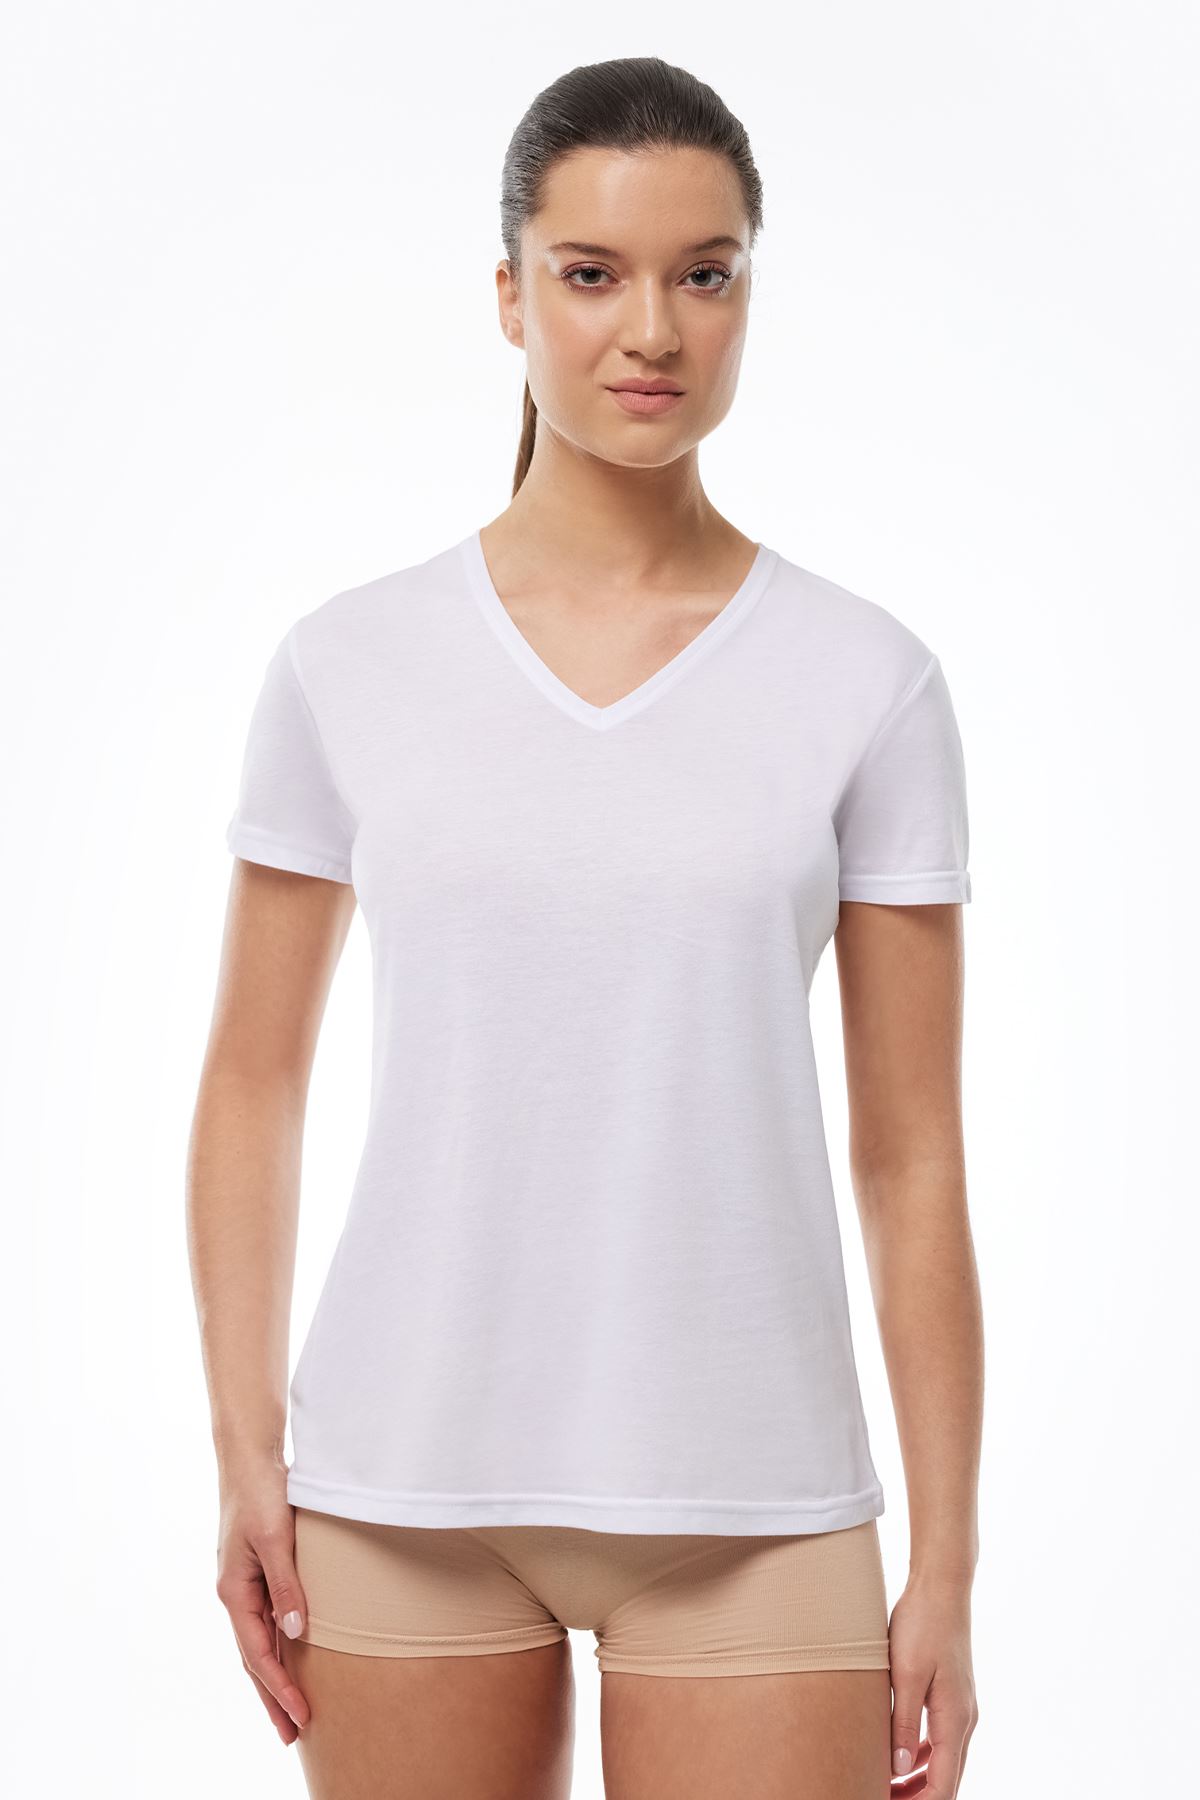 Kadın Beyaz V Yaka İnce Modal Yaz Serinliği Tshirt 7051